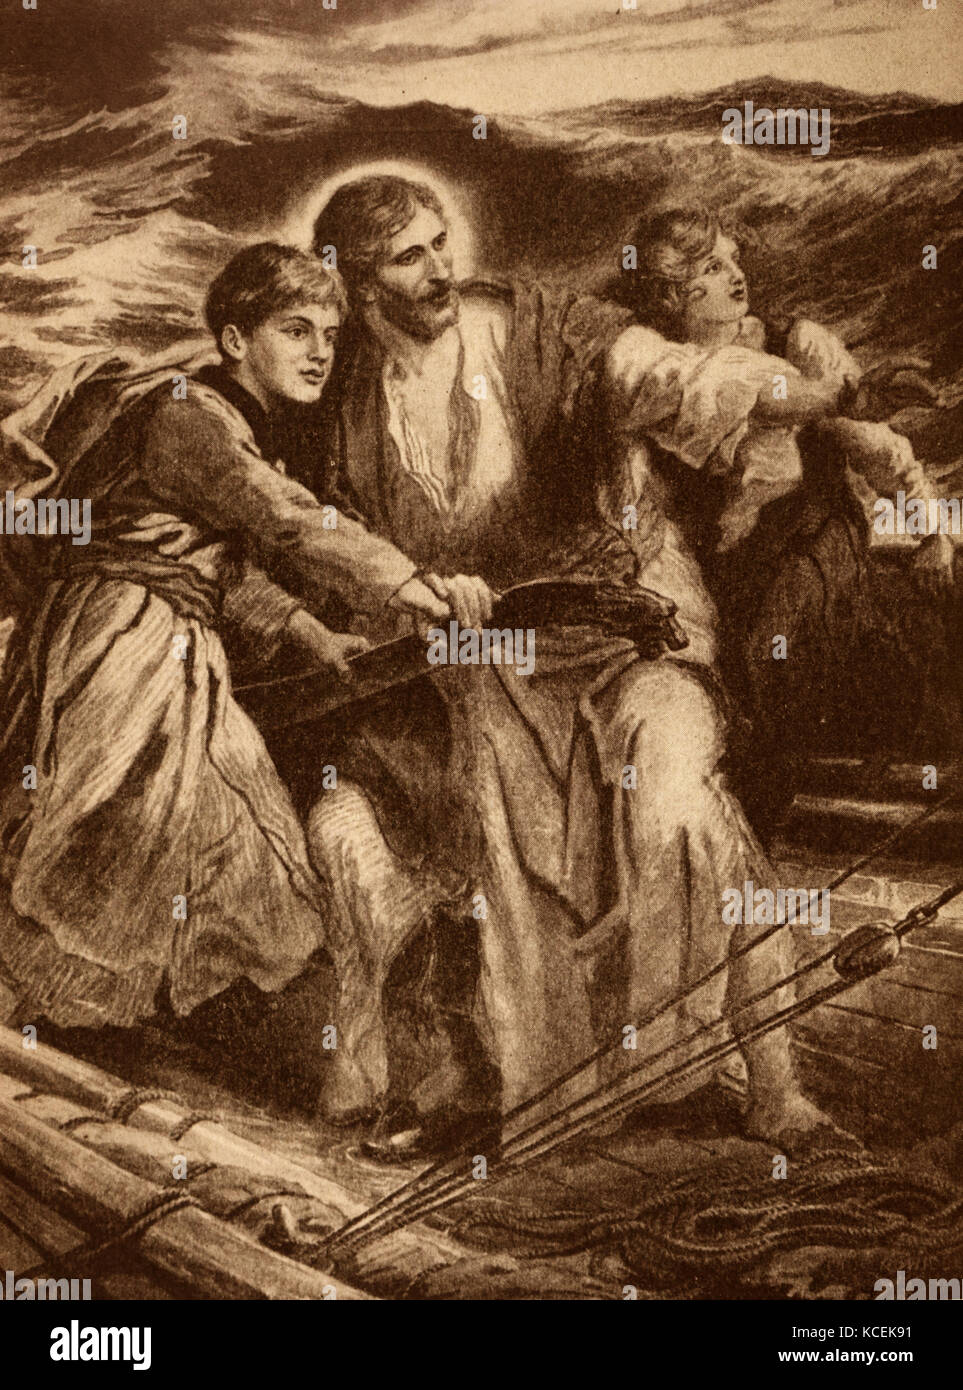 Gemälde der Darstellung Jesu Christi helfen, ein junger Mann durch die rauhen Gewässer während eines Sturms navigieren. Stockfoto